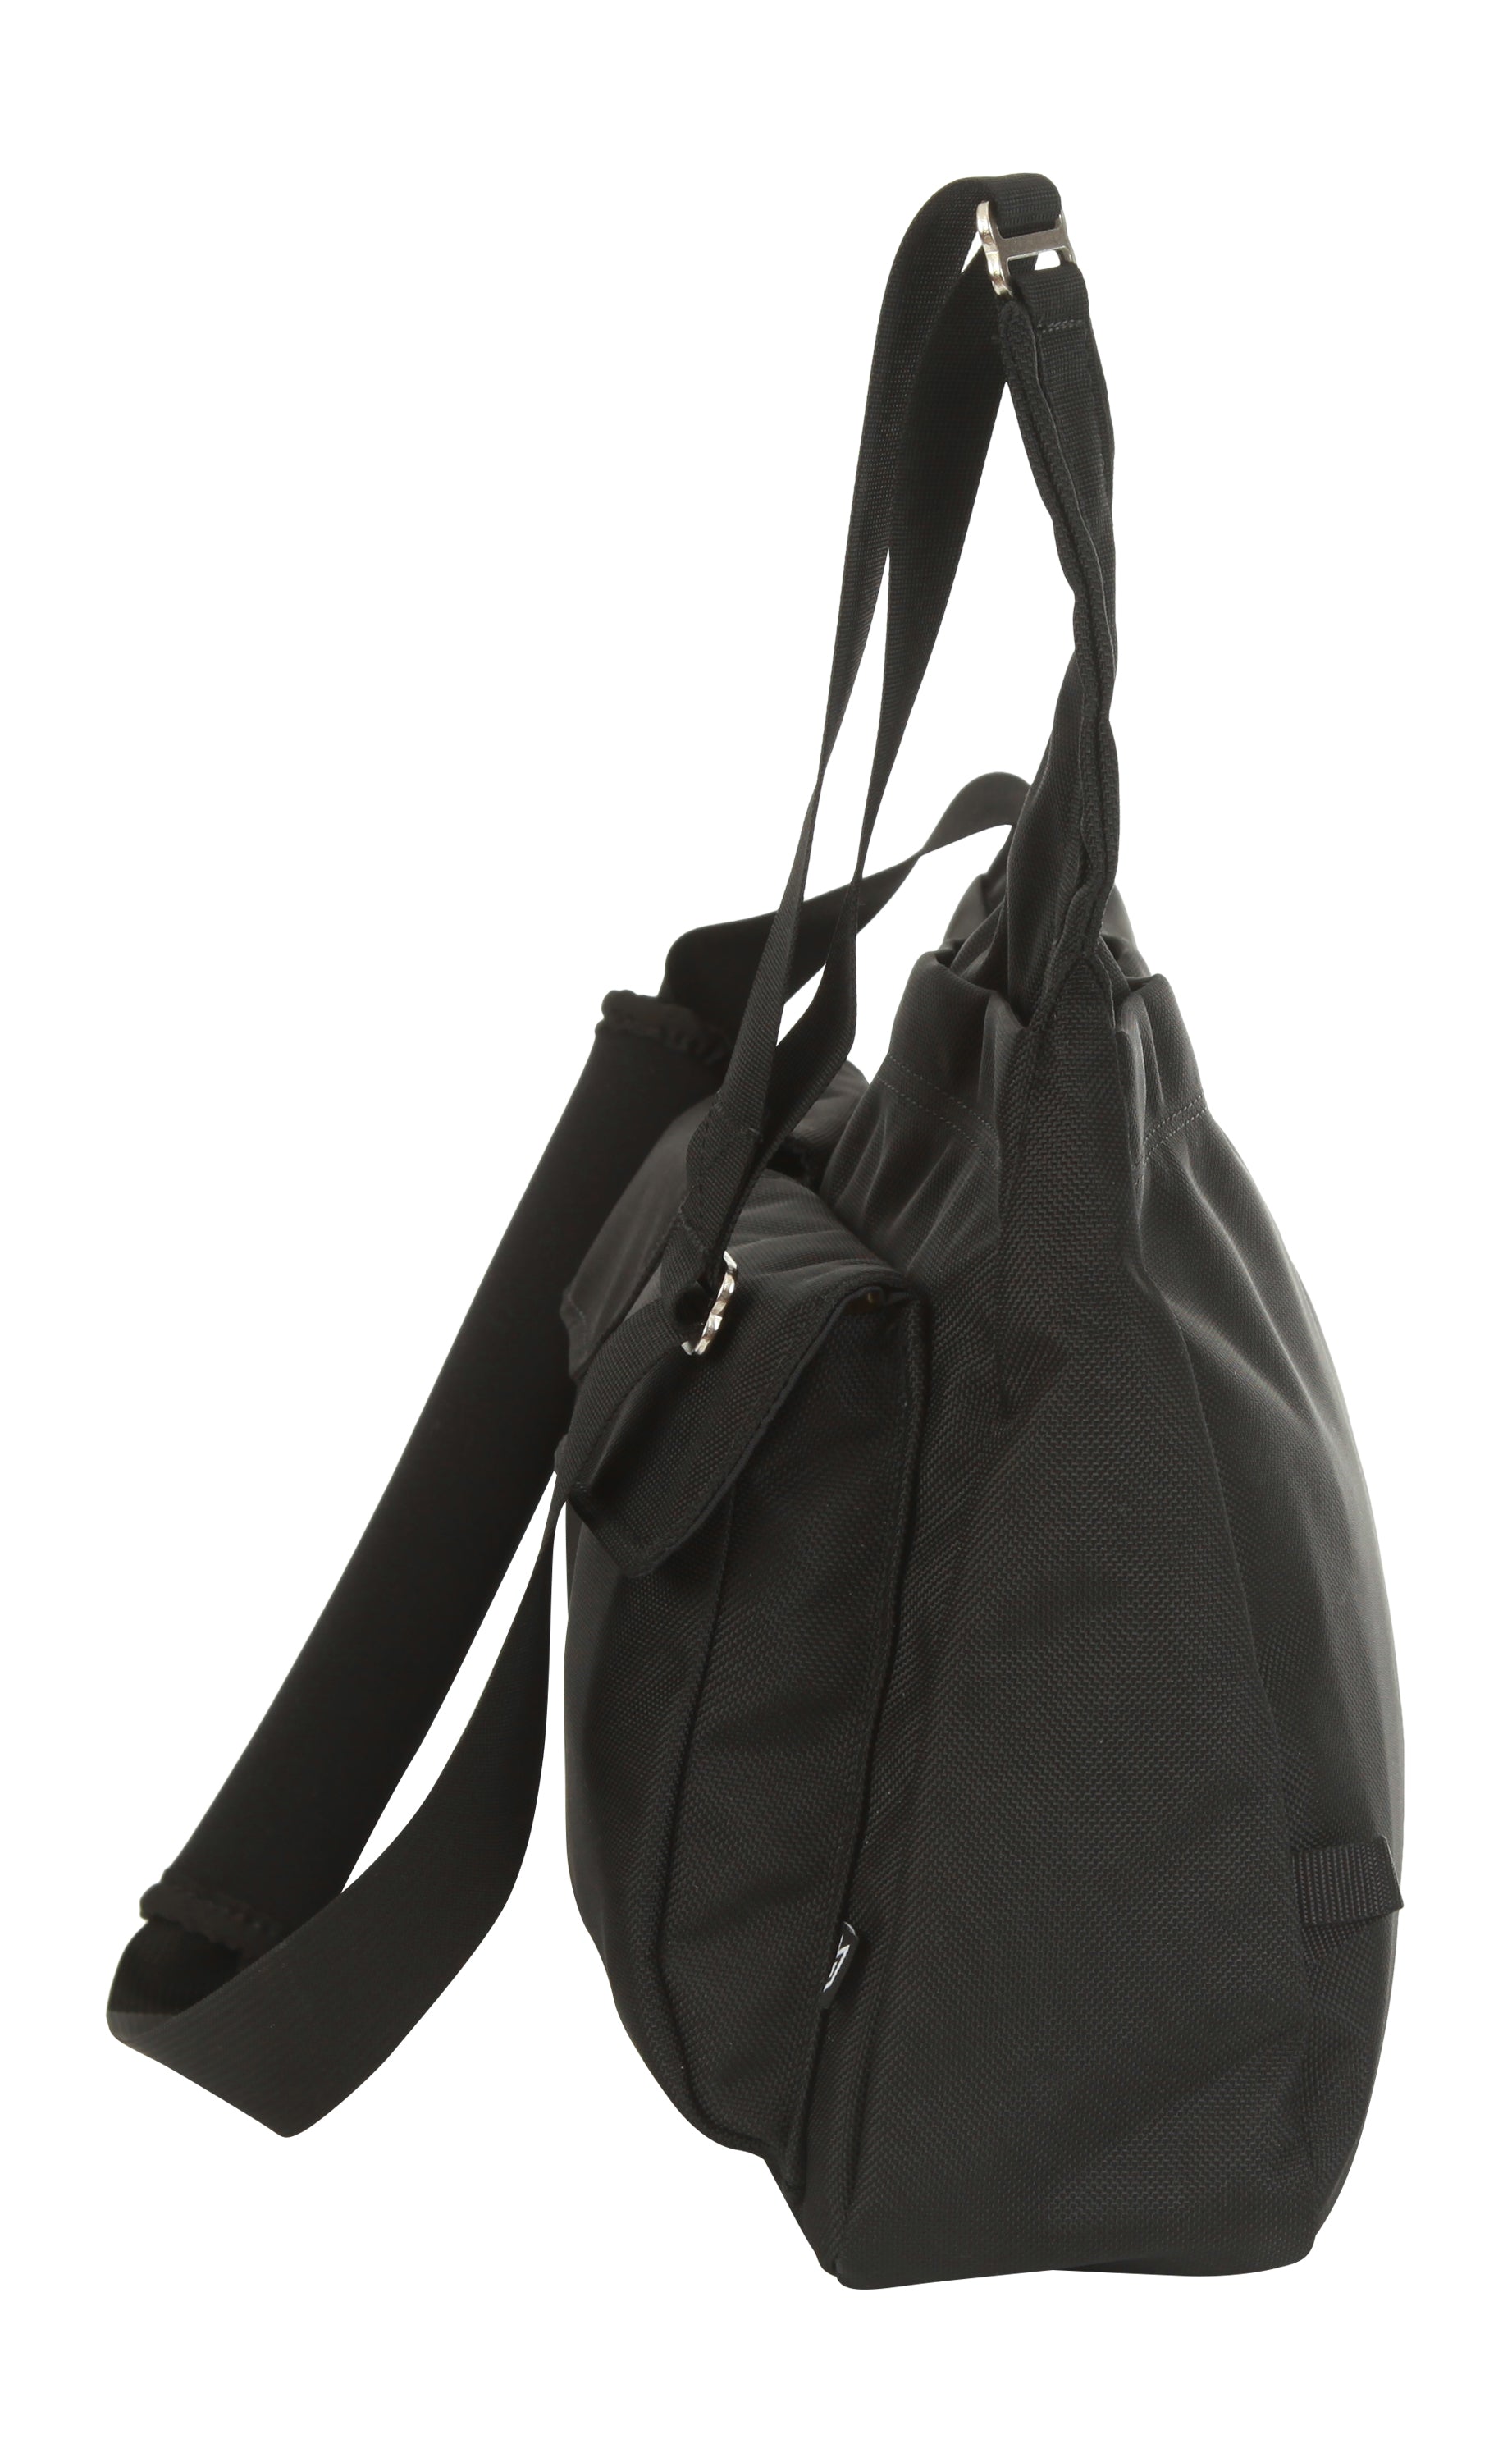 Õde Bag - Black – missionarybag